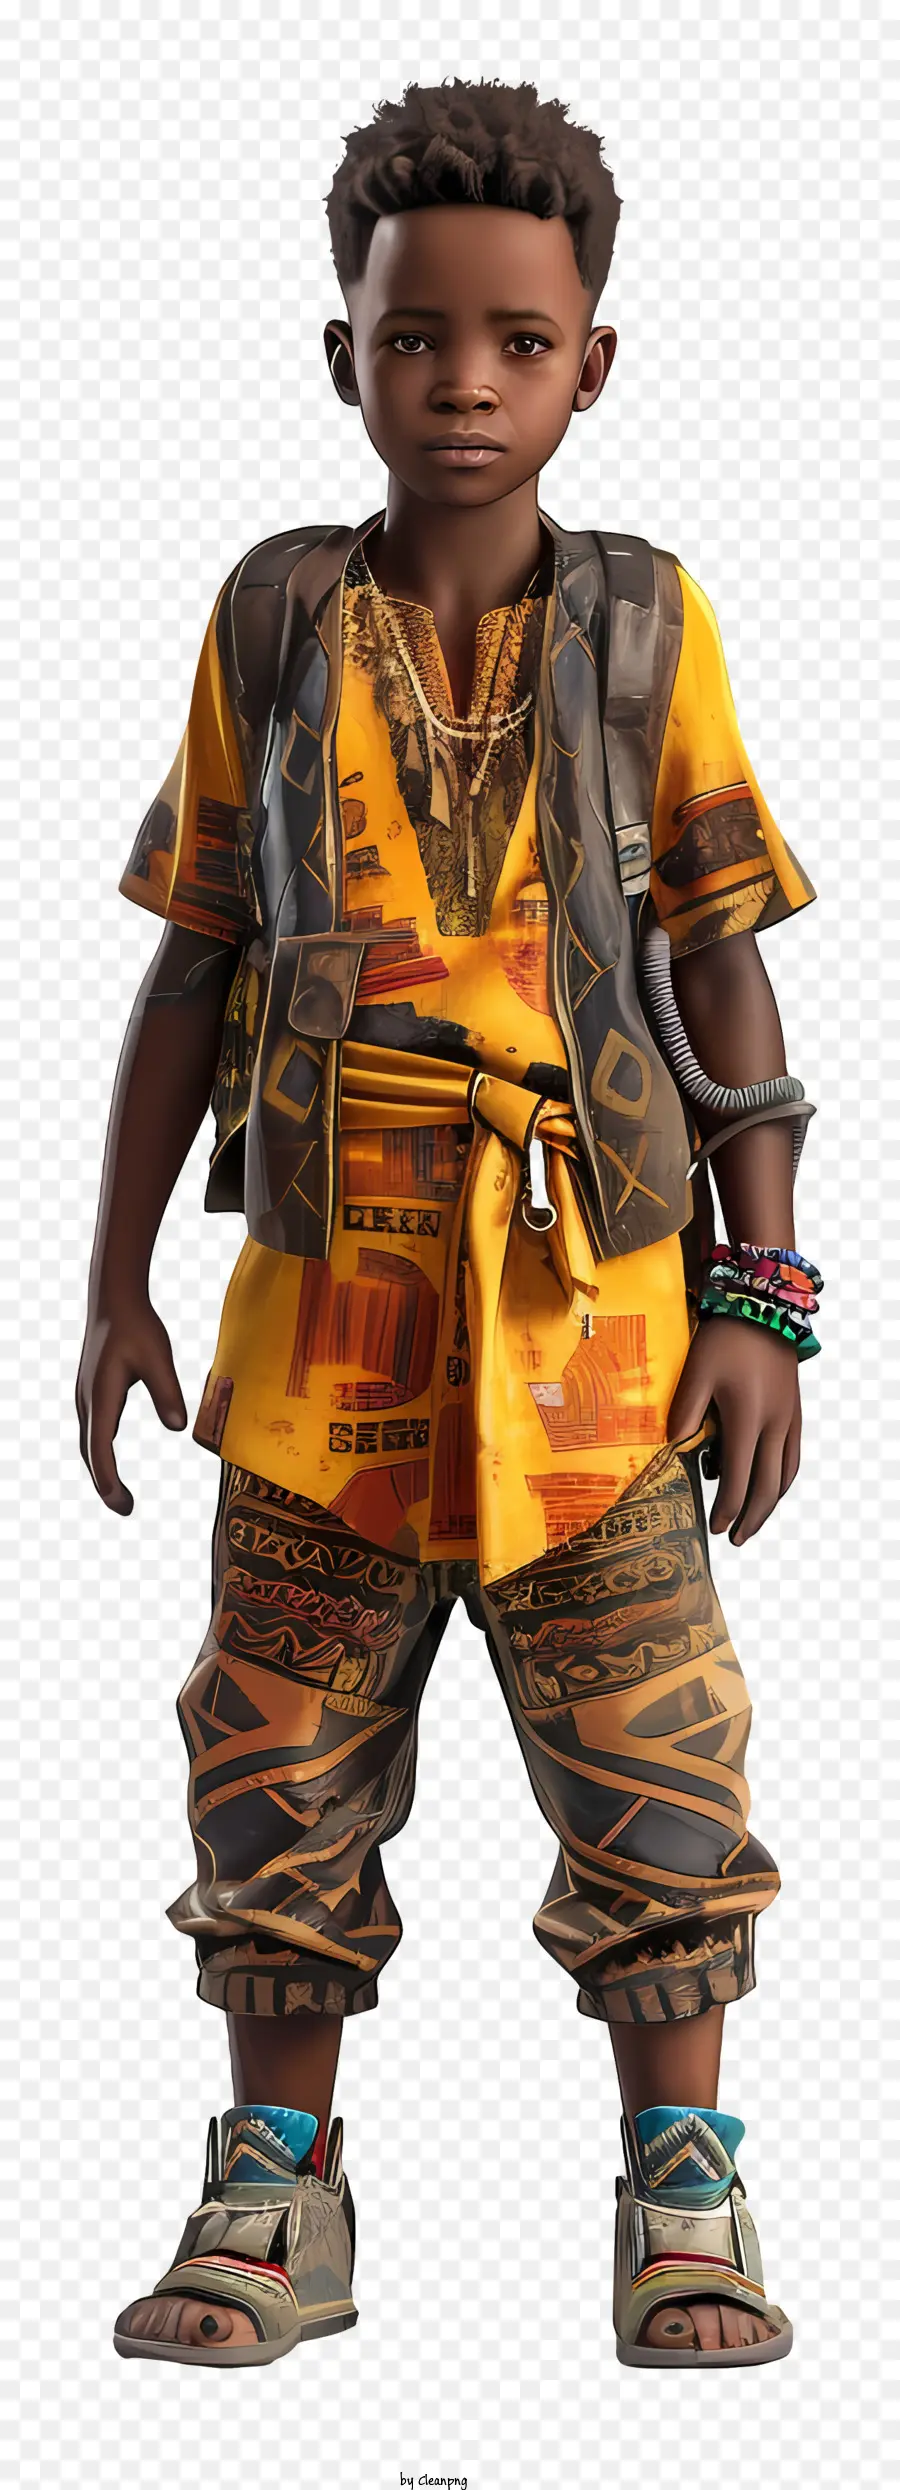 cậu bé châu Phi thời trang châu Phi quần áo màu vàng sáng tạo bộ trang phục lấy cảm hứng từ châu Phi nhiếp ảnh thời trang - Người mặc trang phục châu Phi tươi sáng tư thế bên ngoài